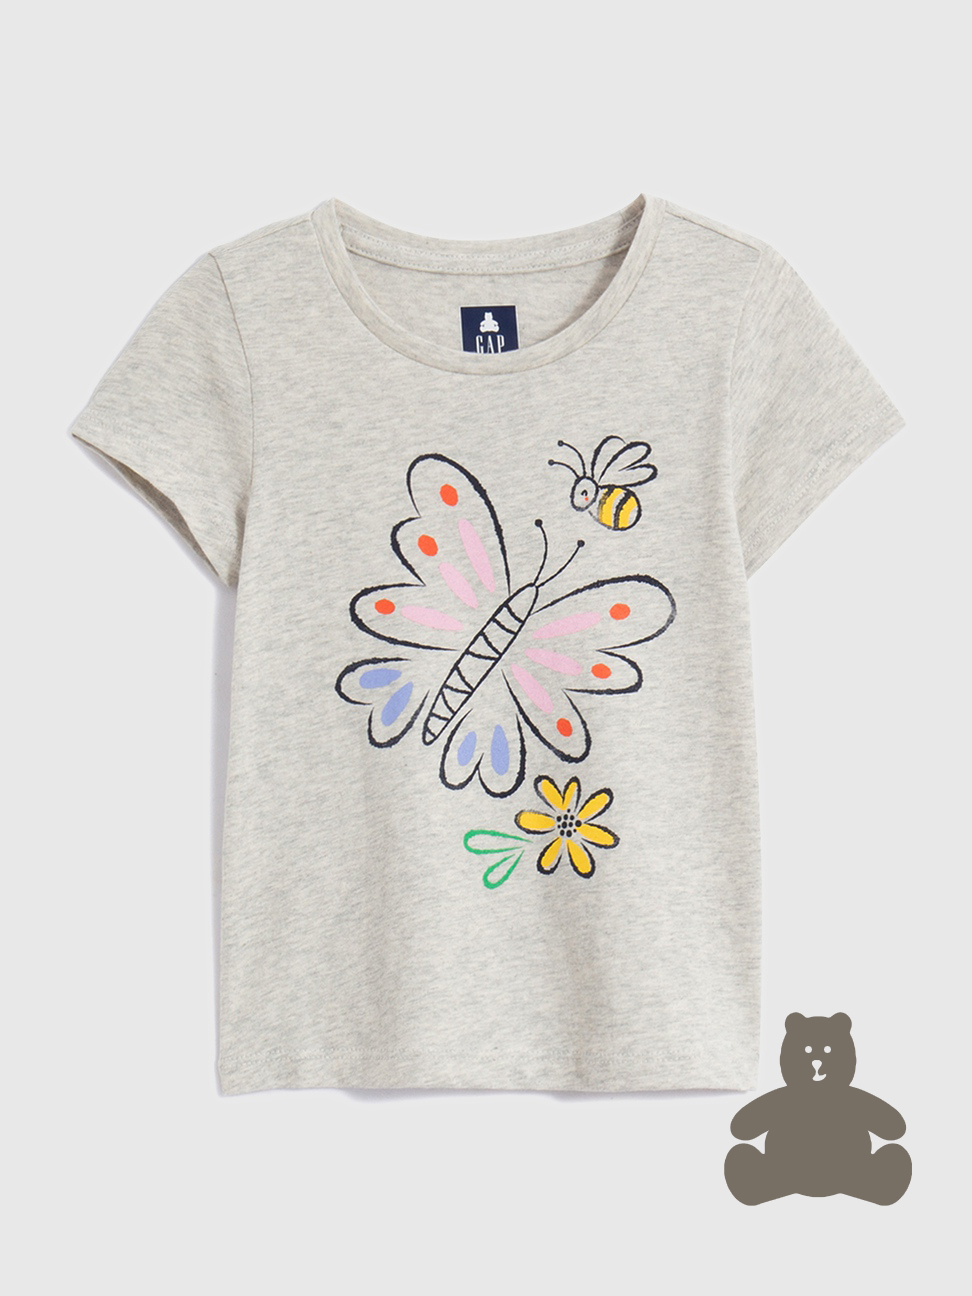 女幼童裝|純棉印花短袖T恤 布萊納系列-淺灰色